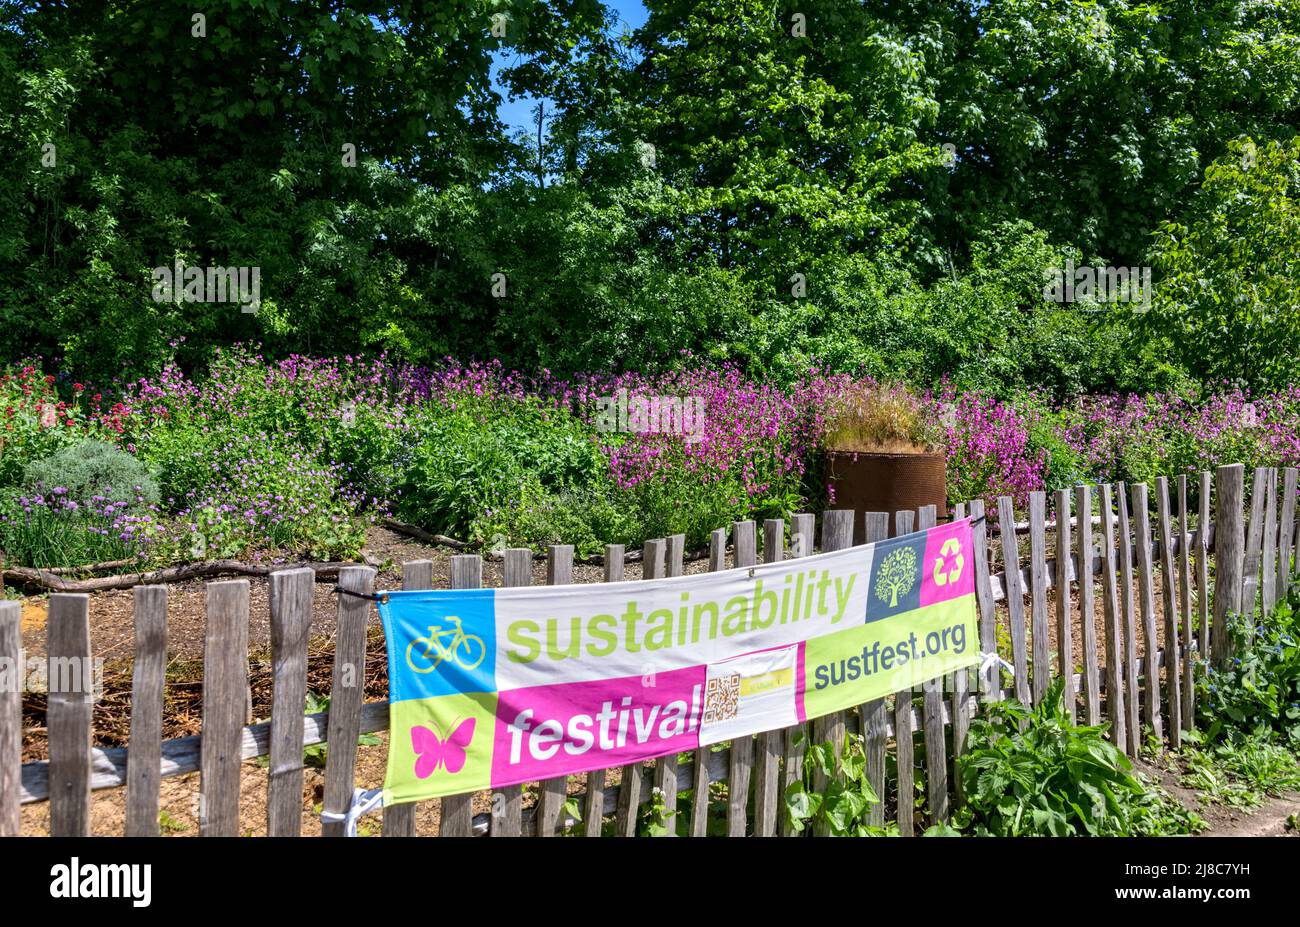 Sign for Sustainability Festival, Verulanium Park, St. Albans Hertfordshire UK Stock Photo